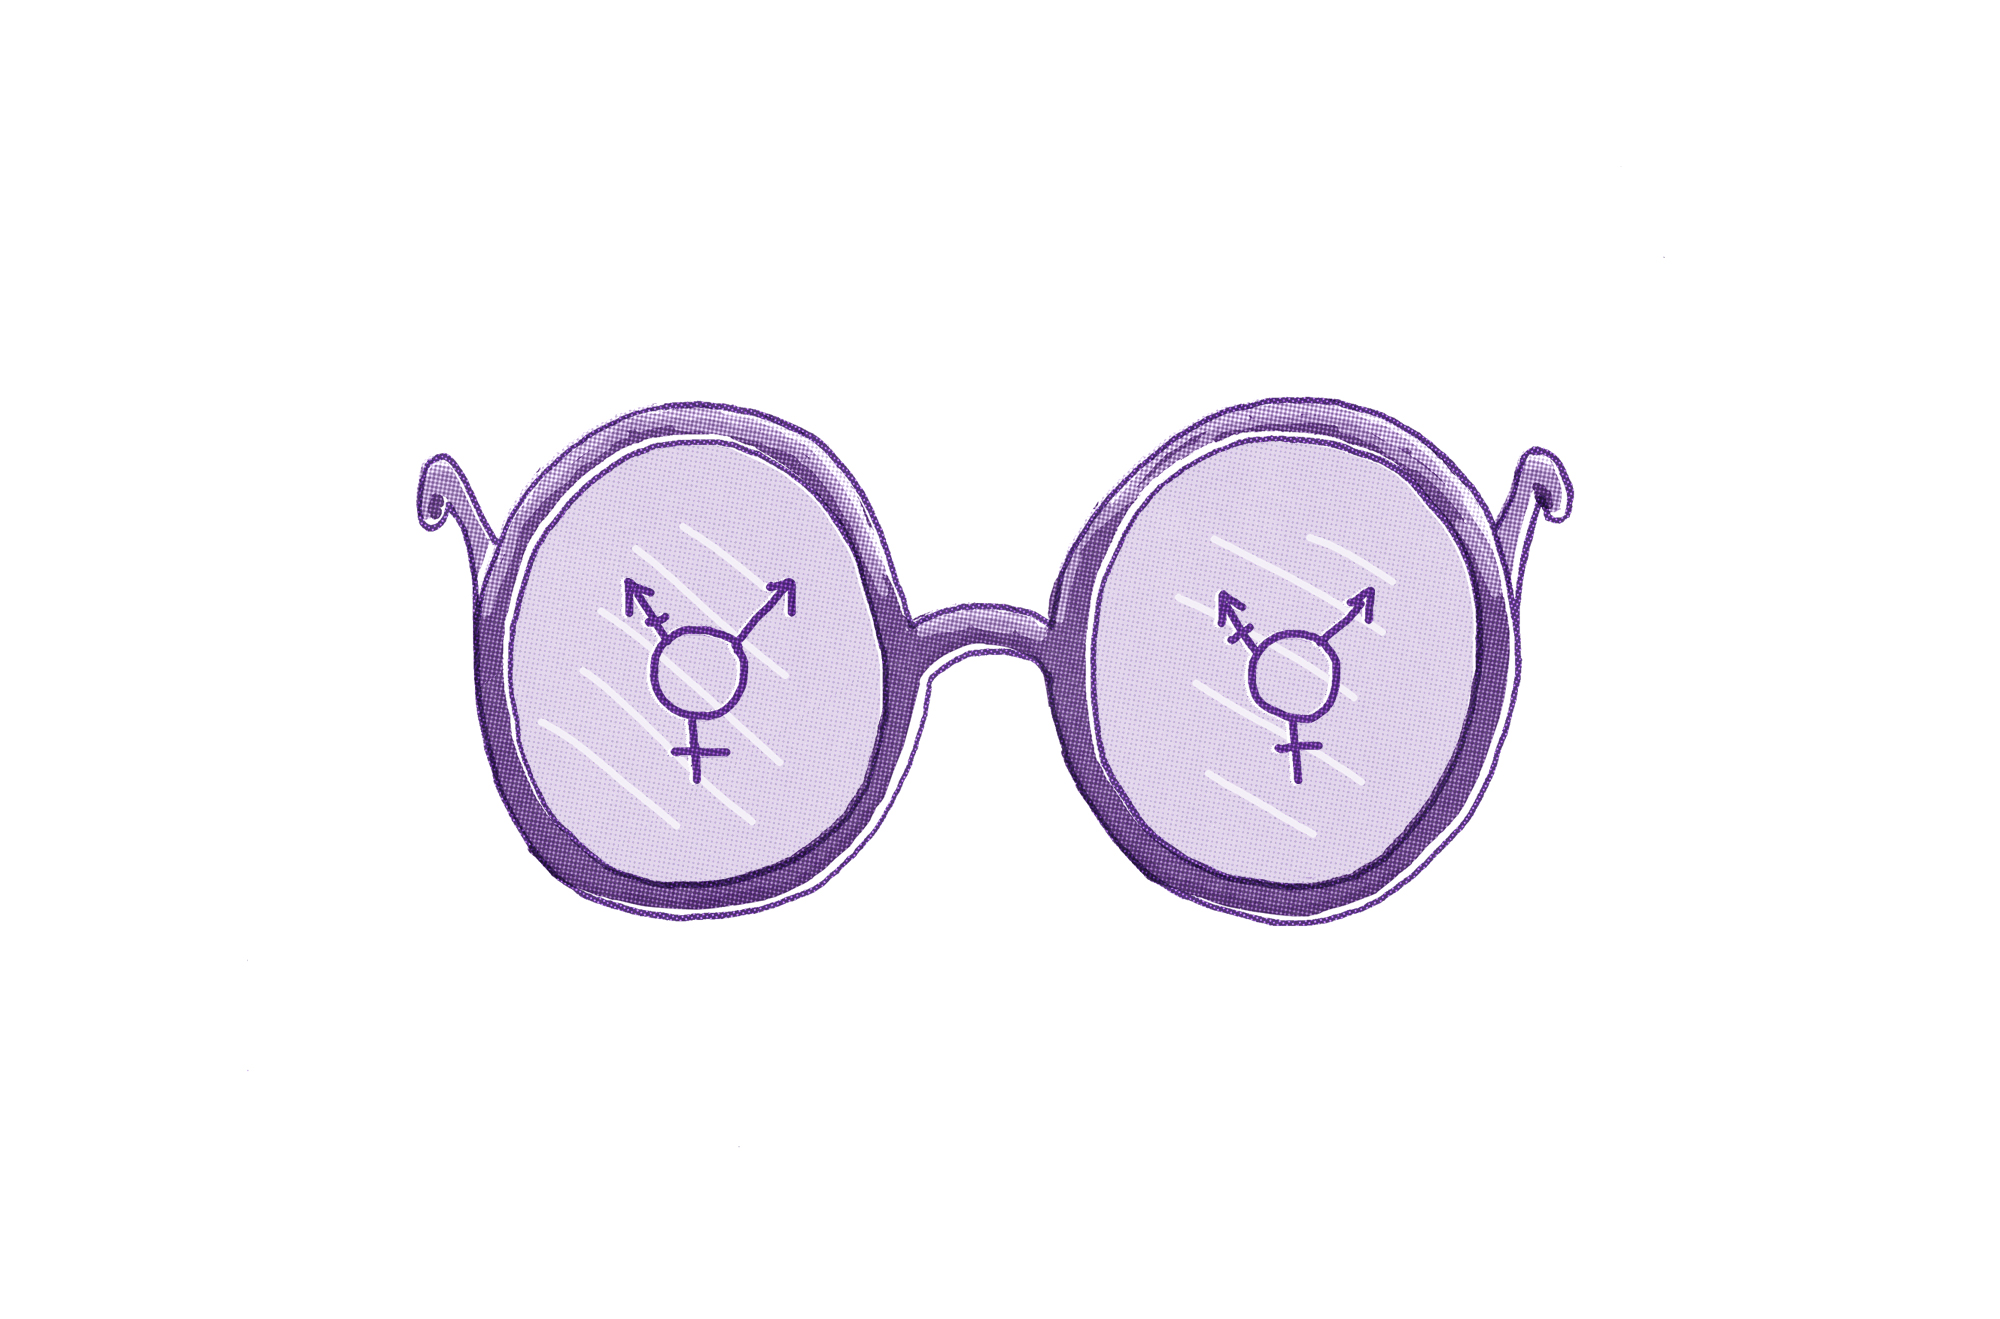 Lenslerinde cinsiyet sembolleri bulunan bir çift mor gözlük resmi. Sol camda birleşik bir erkek ve kadın sembolü bulunurken, sağ camda benzer ancak biraz farklı birleşik bir cinsiyet sembolü bulunmaktadır.